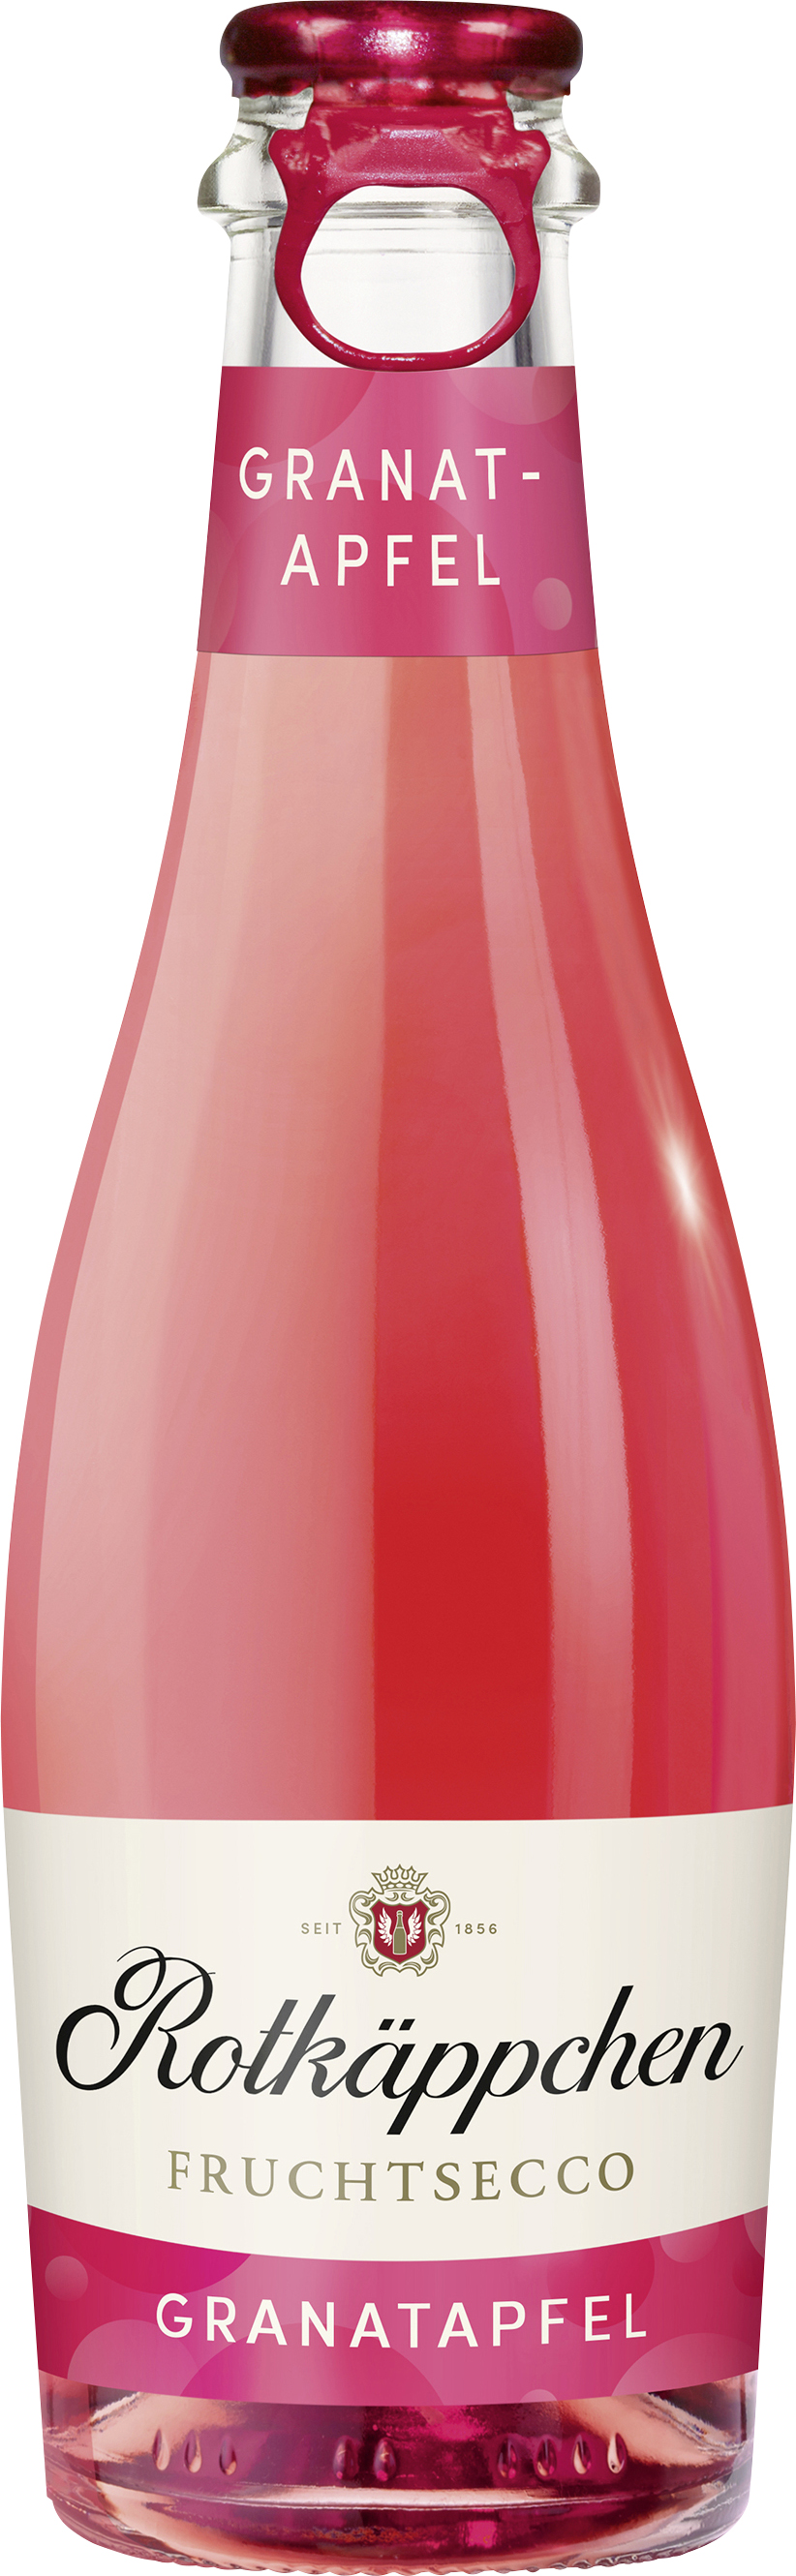 Rotkäppchen Fruchtsecco Granatapfel 0,2 l | Schneekloth